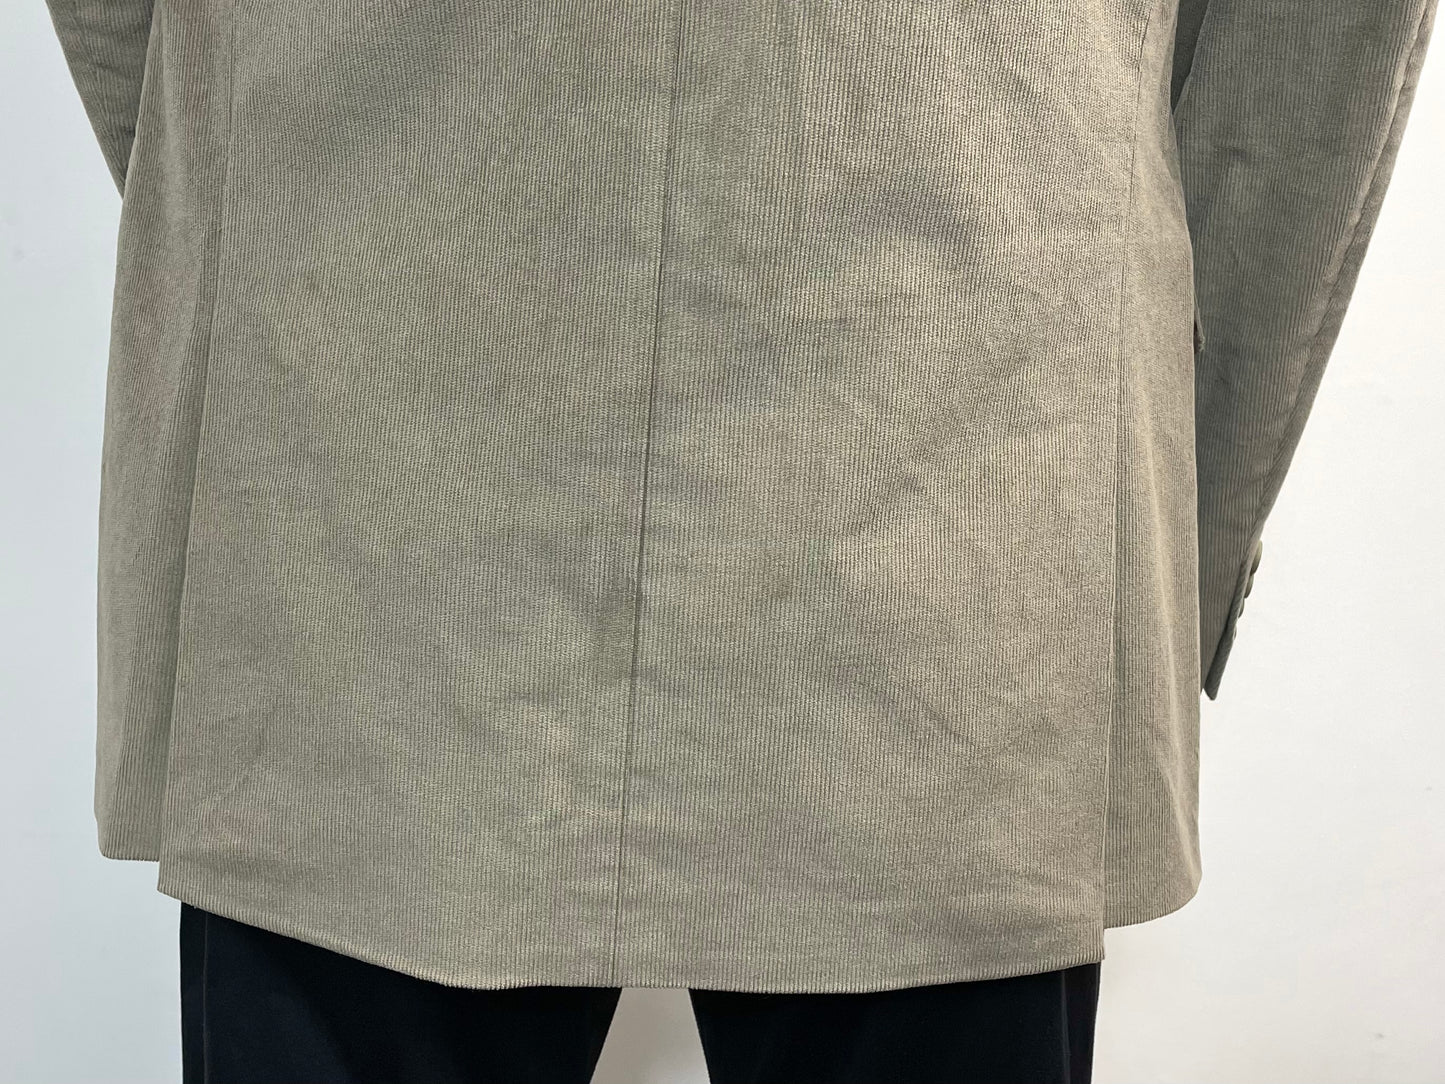 Bar III Men’s Linen Cotton Suit Jacket Blazer Sport Coat in Khaki